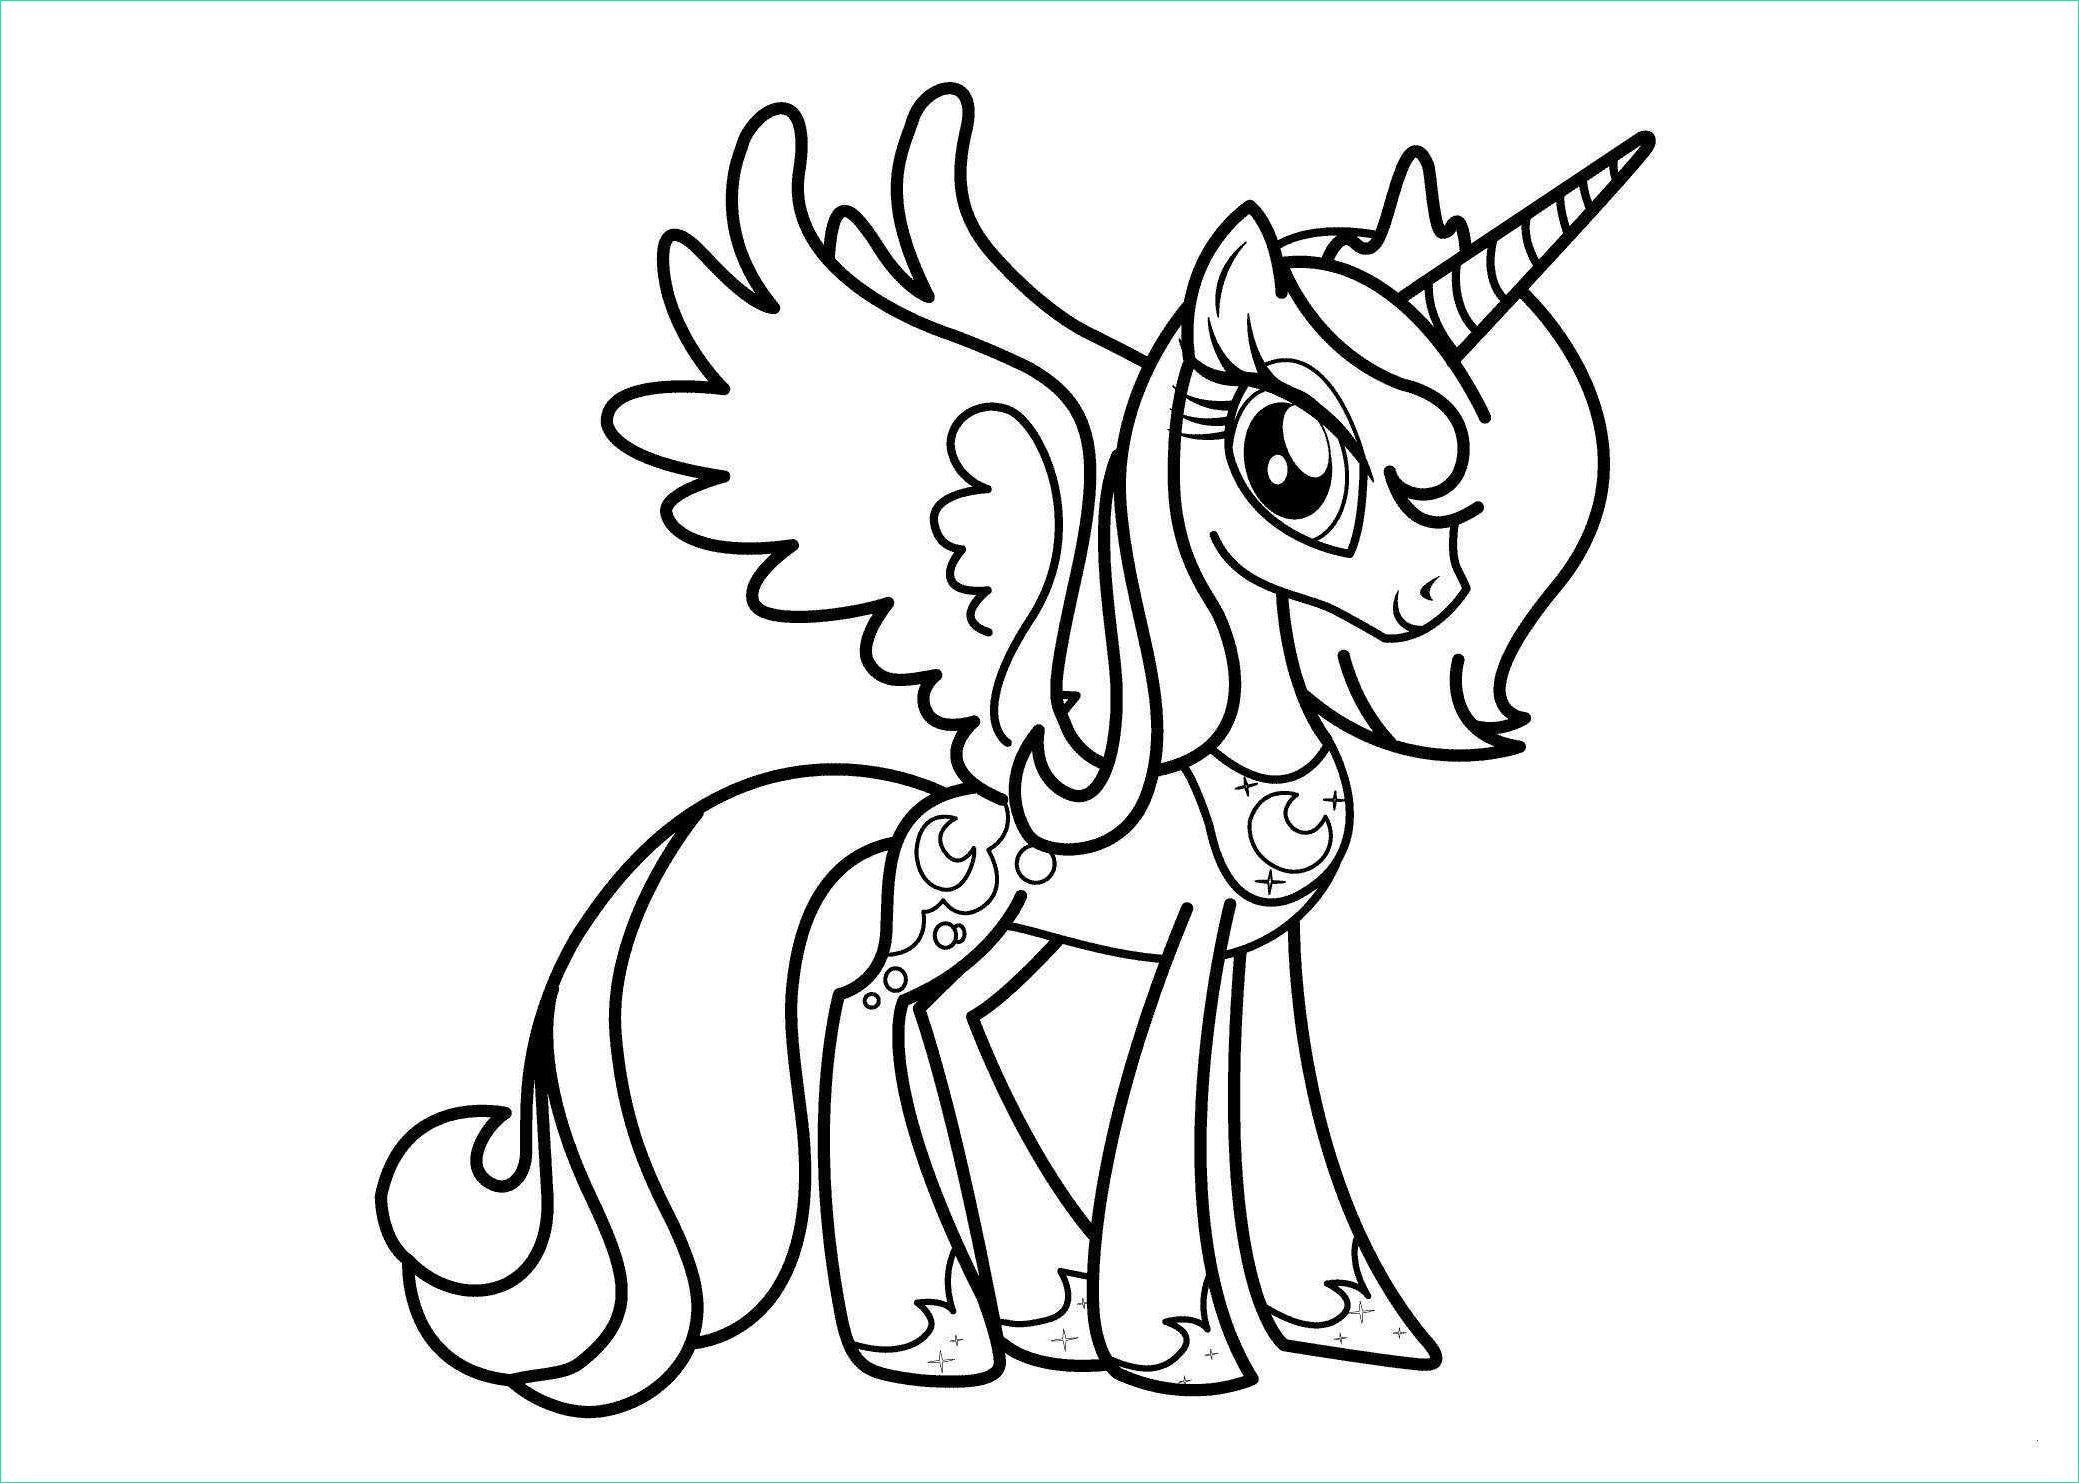 coloriage my little pony princesse cadance meilleur de pony coloring dedans coloriage de my little pony princesse cadance